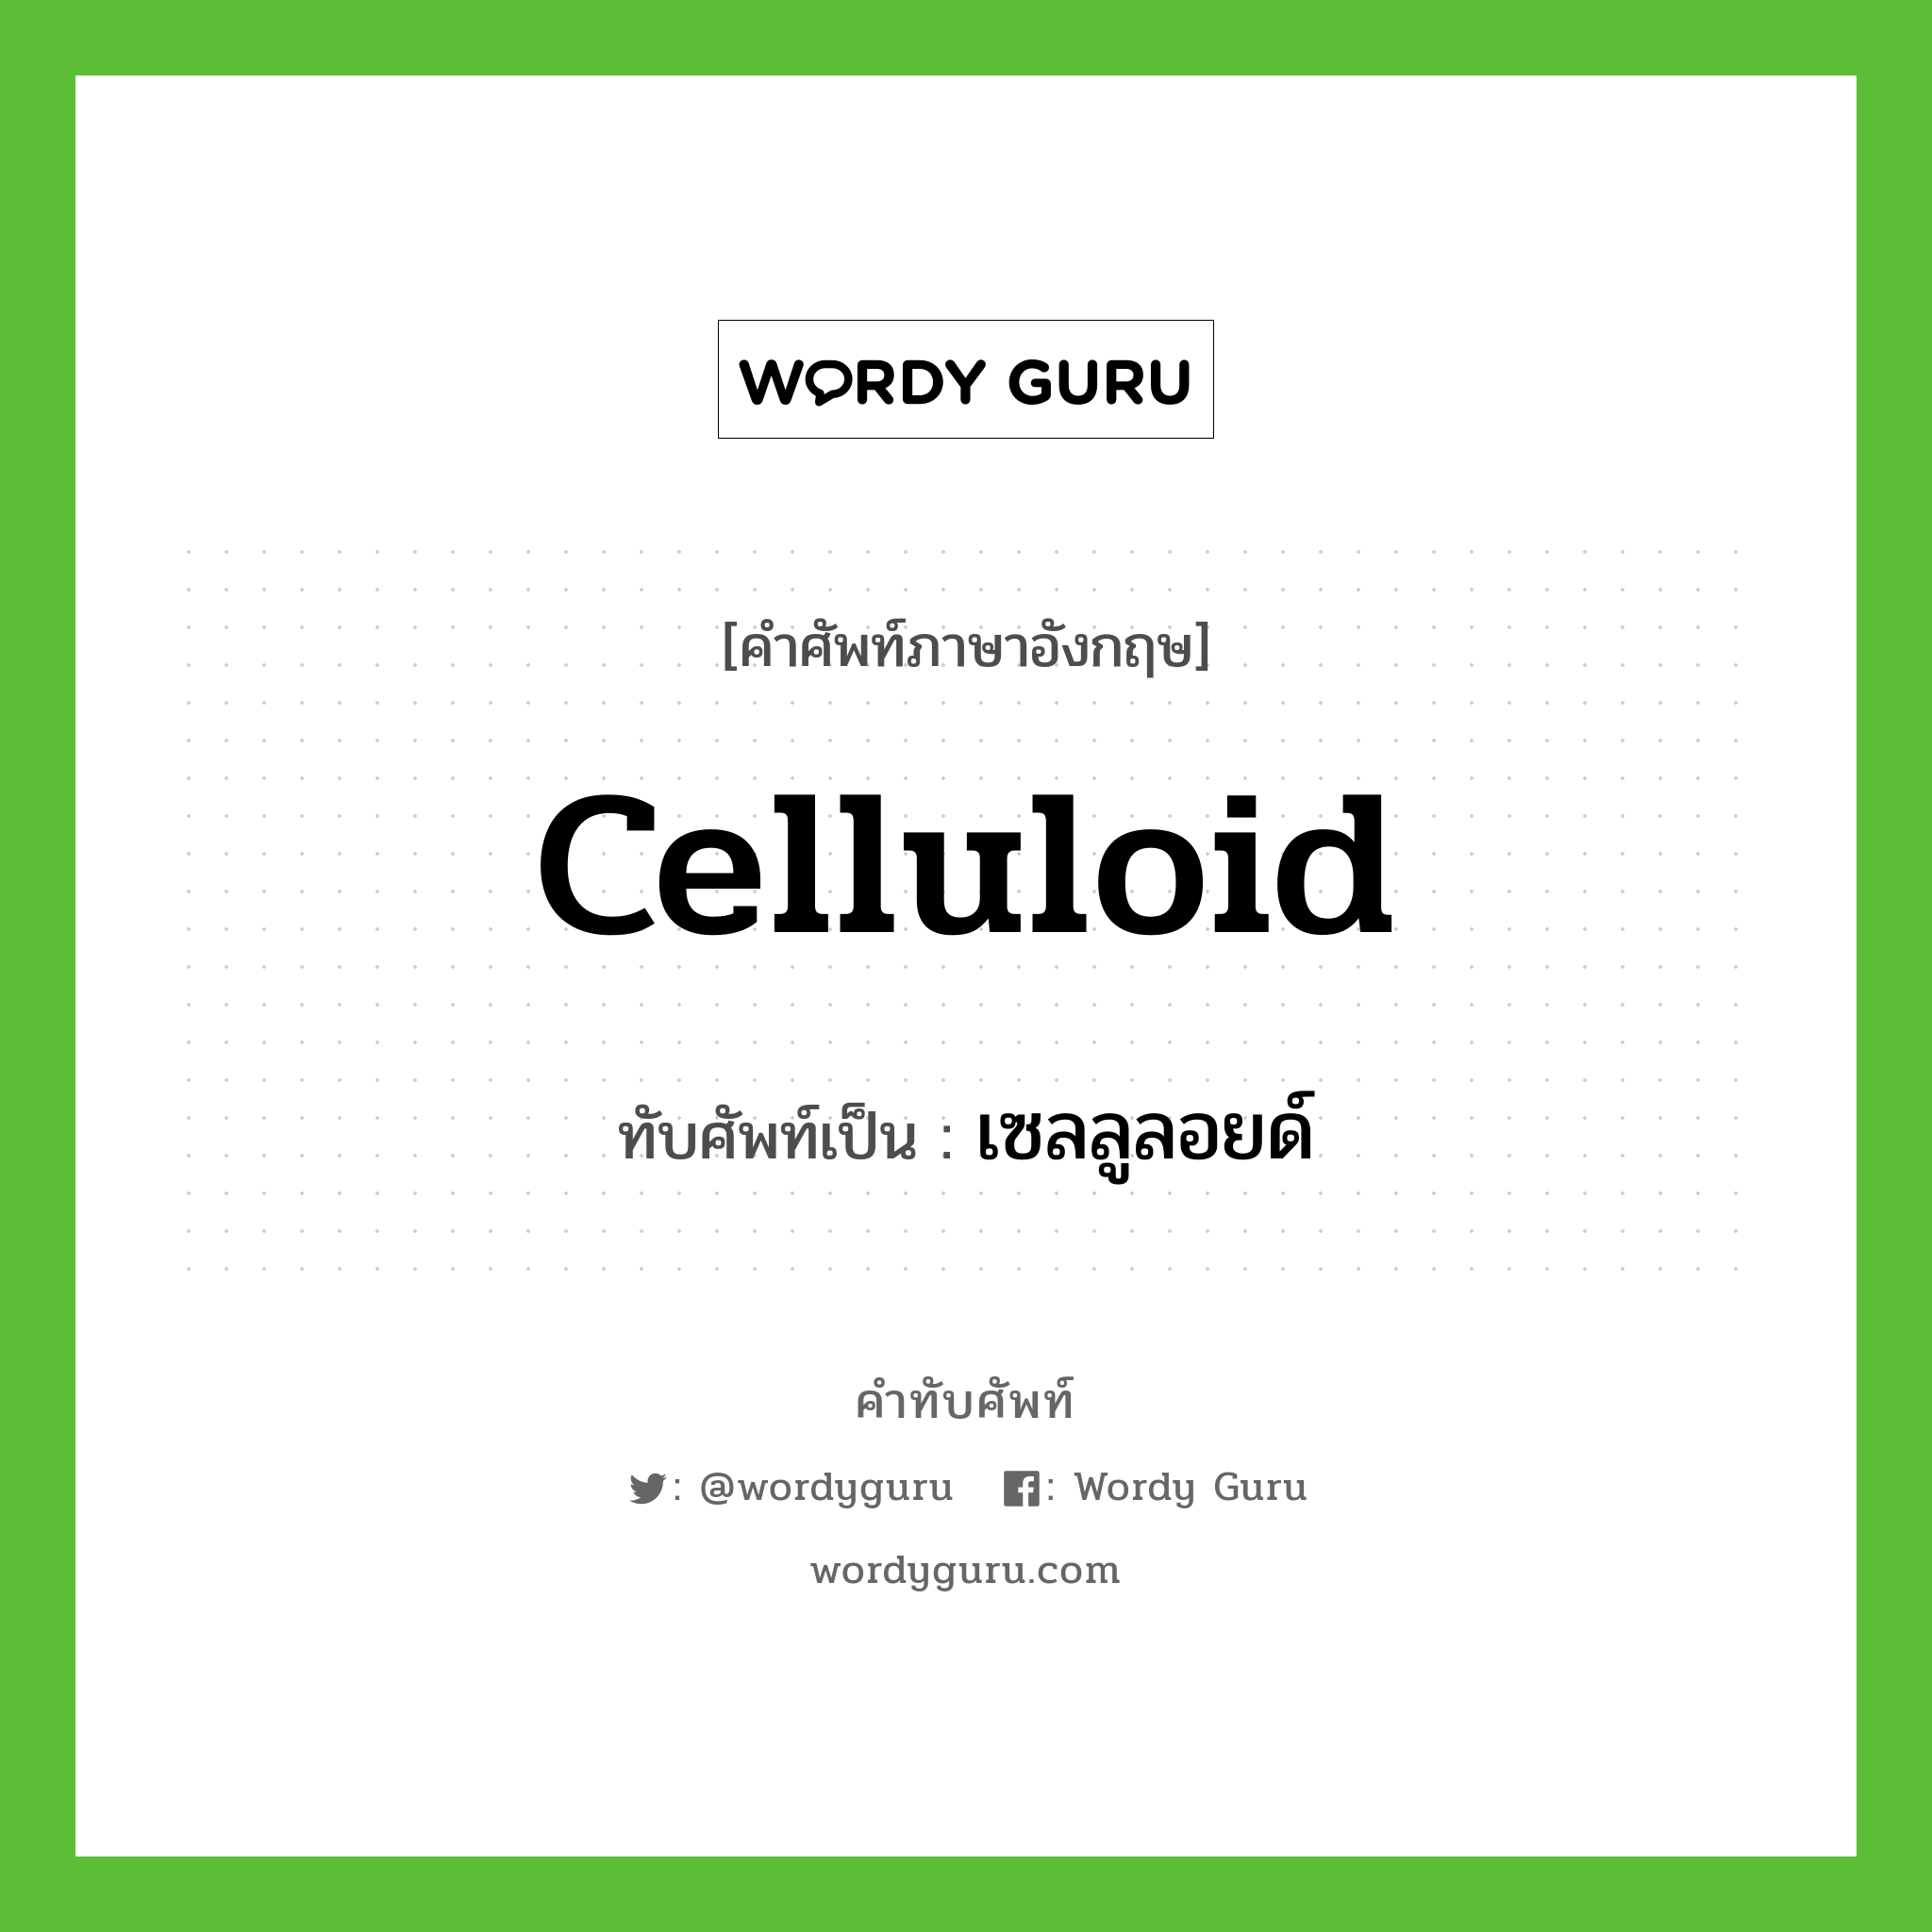 celluloid เขียนเป็นคำไทยว่าอะไร?, คำศัพท์ภาษาอังกฤษ celluloid ทับศัพท์เป็น เซลลูลอยด์